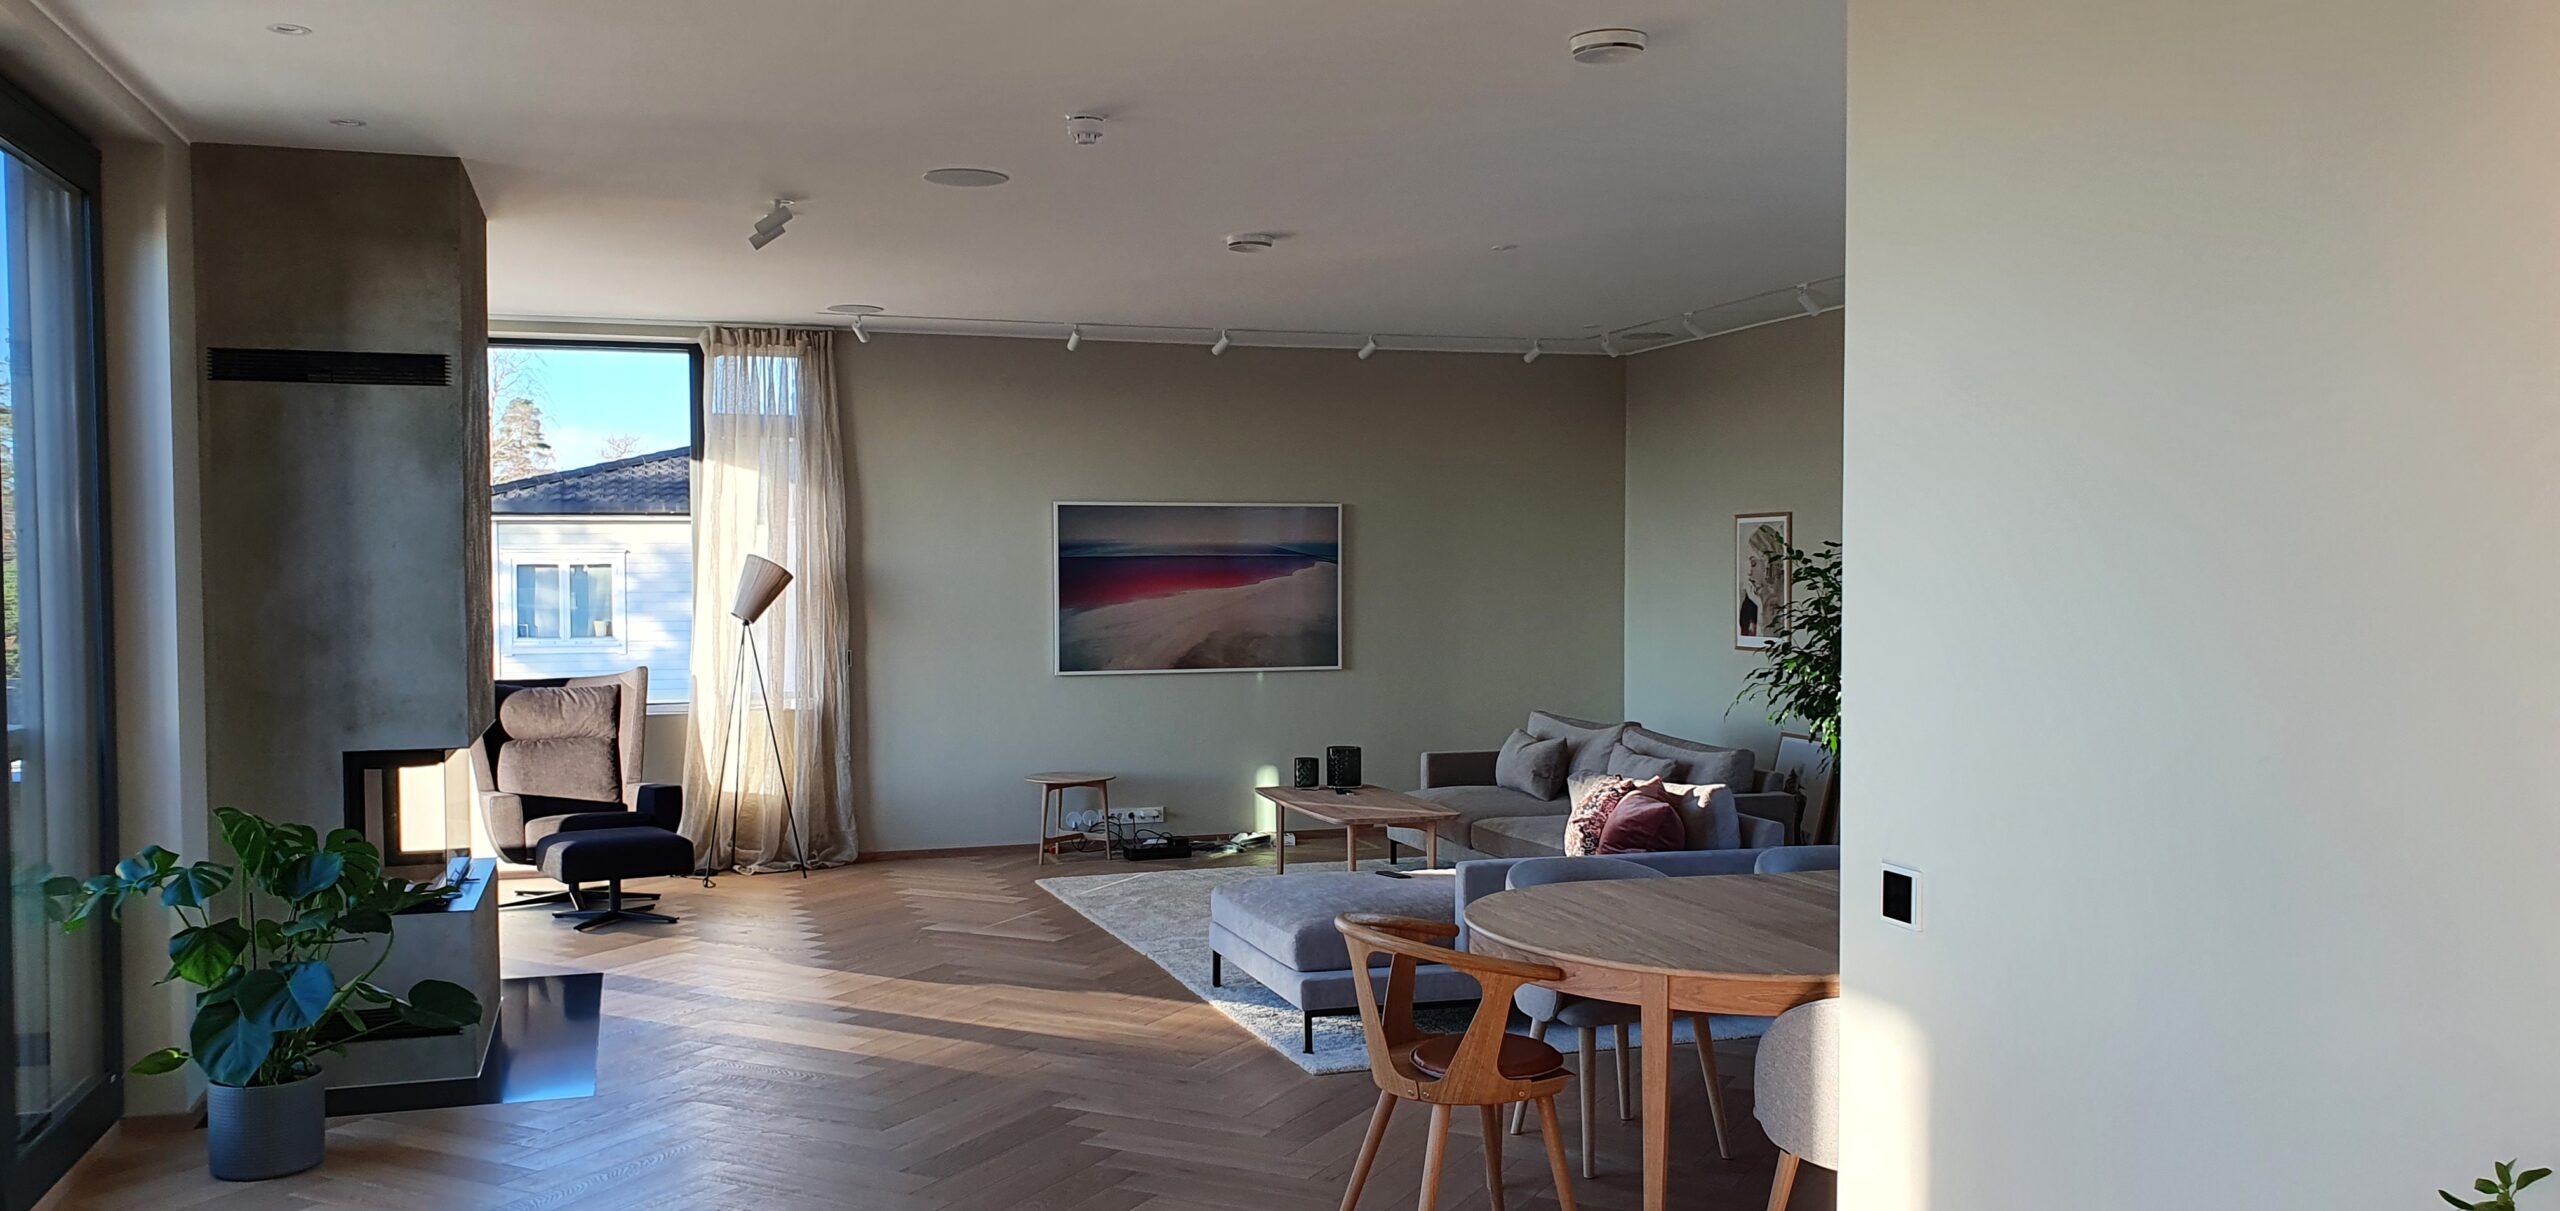 Stue, Finstue, Spisestue, TV-Stue innredning med integrert lyd og bilde system med innfelte arkitektur høyttalere